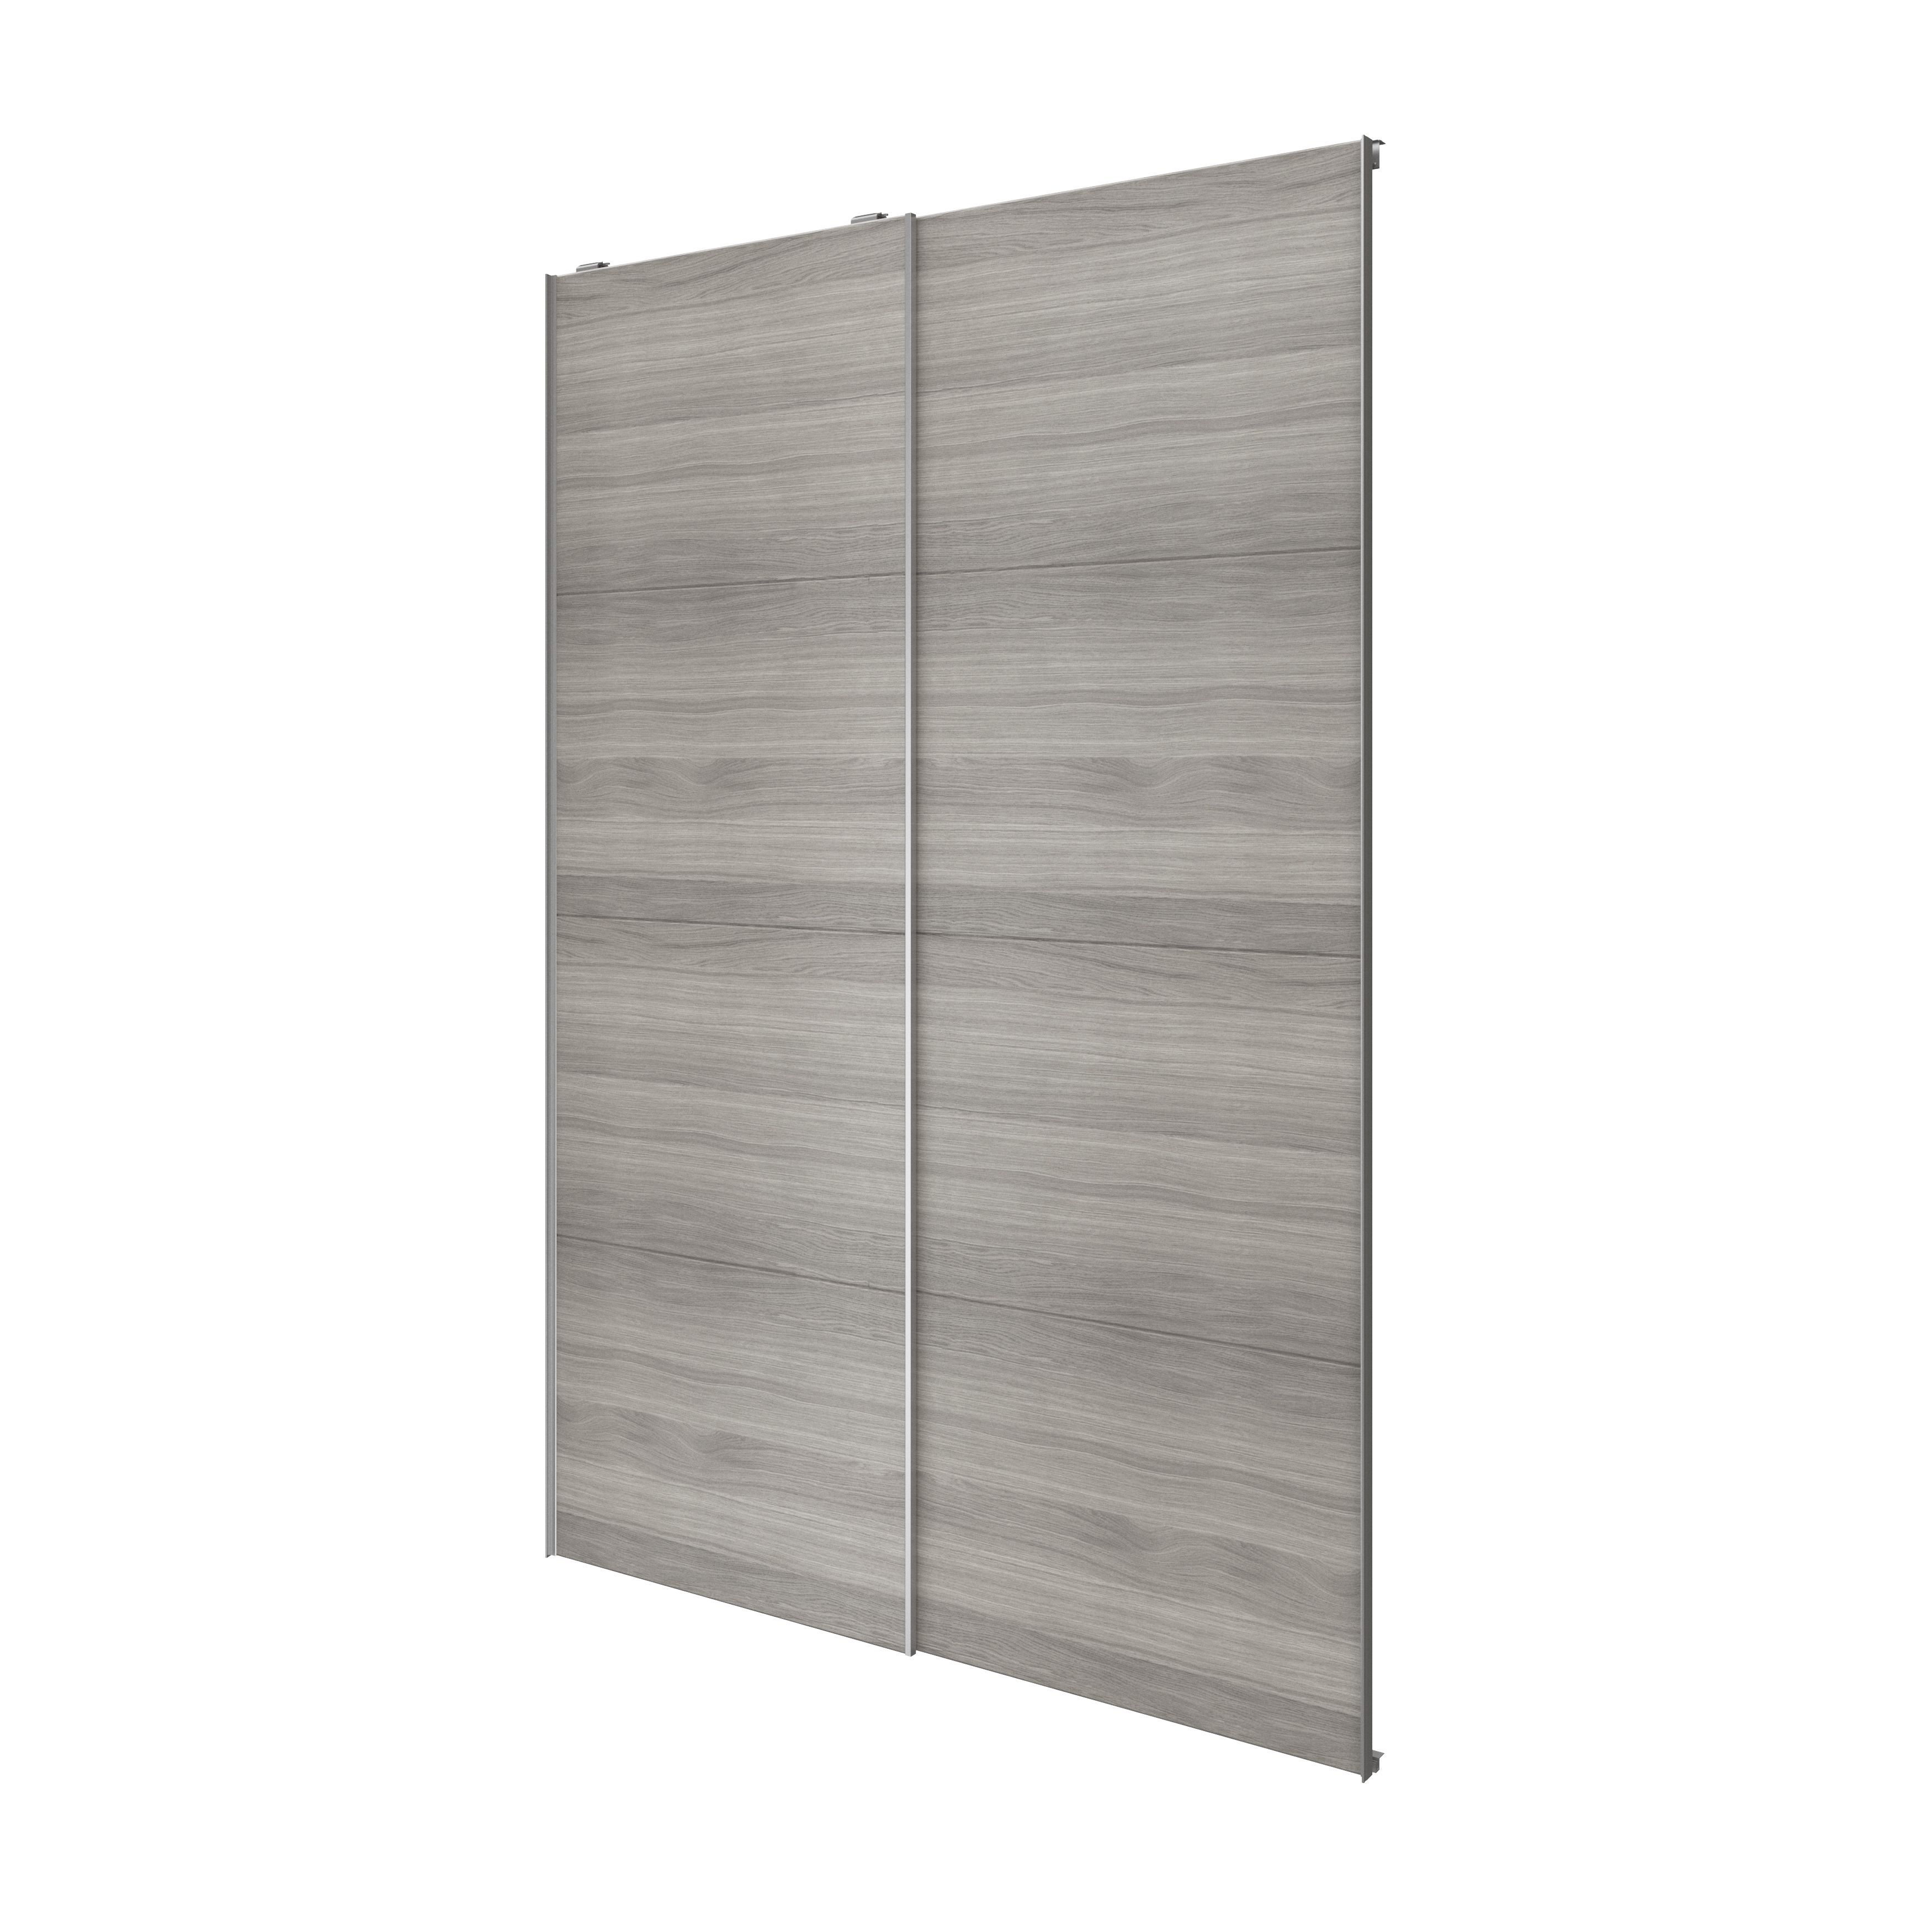 Atomia Panelled Grey oak effect 2 door Sliding Wardrobe Door kit (H)2250mm (W)1500mm